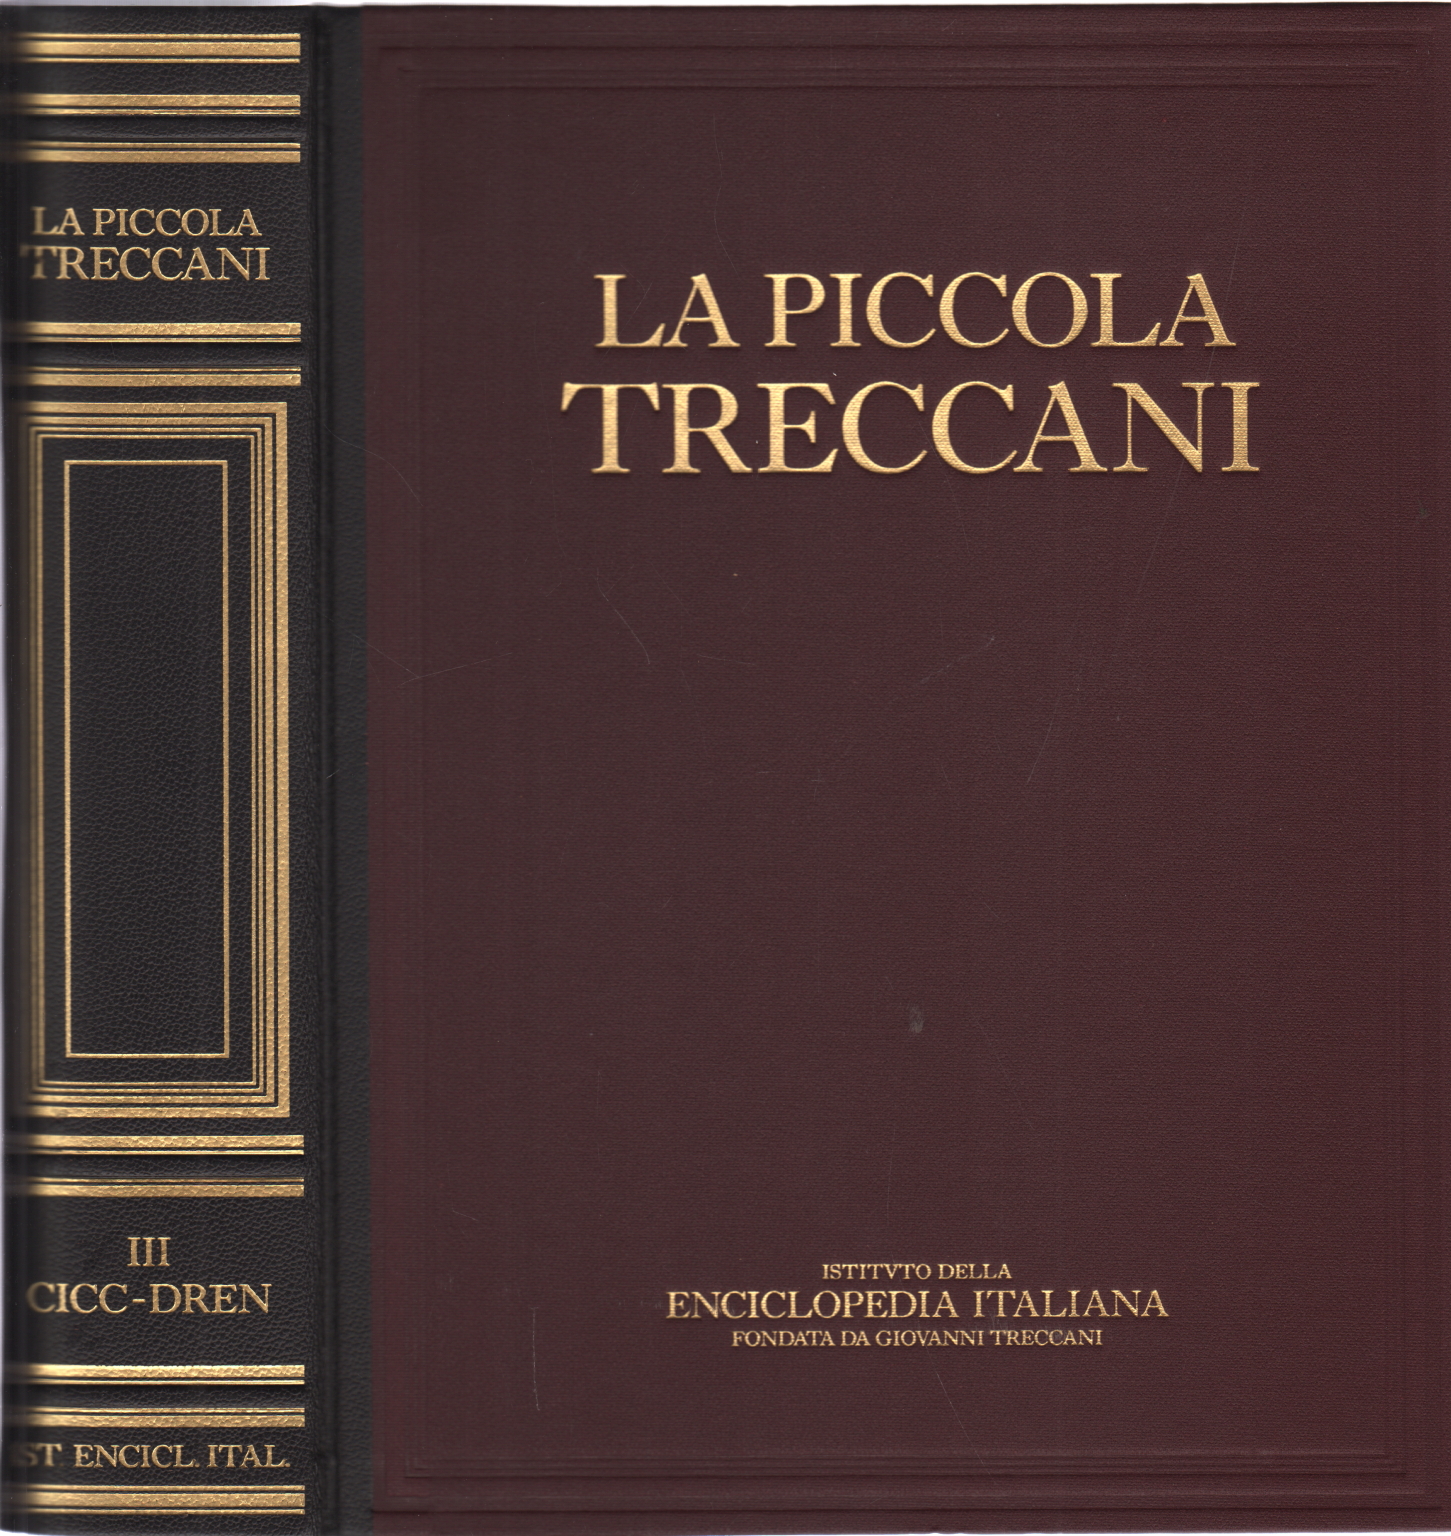 Le petit Treccani III Cicc-Dren